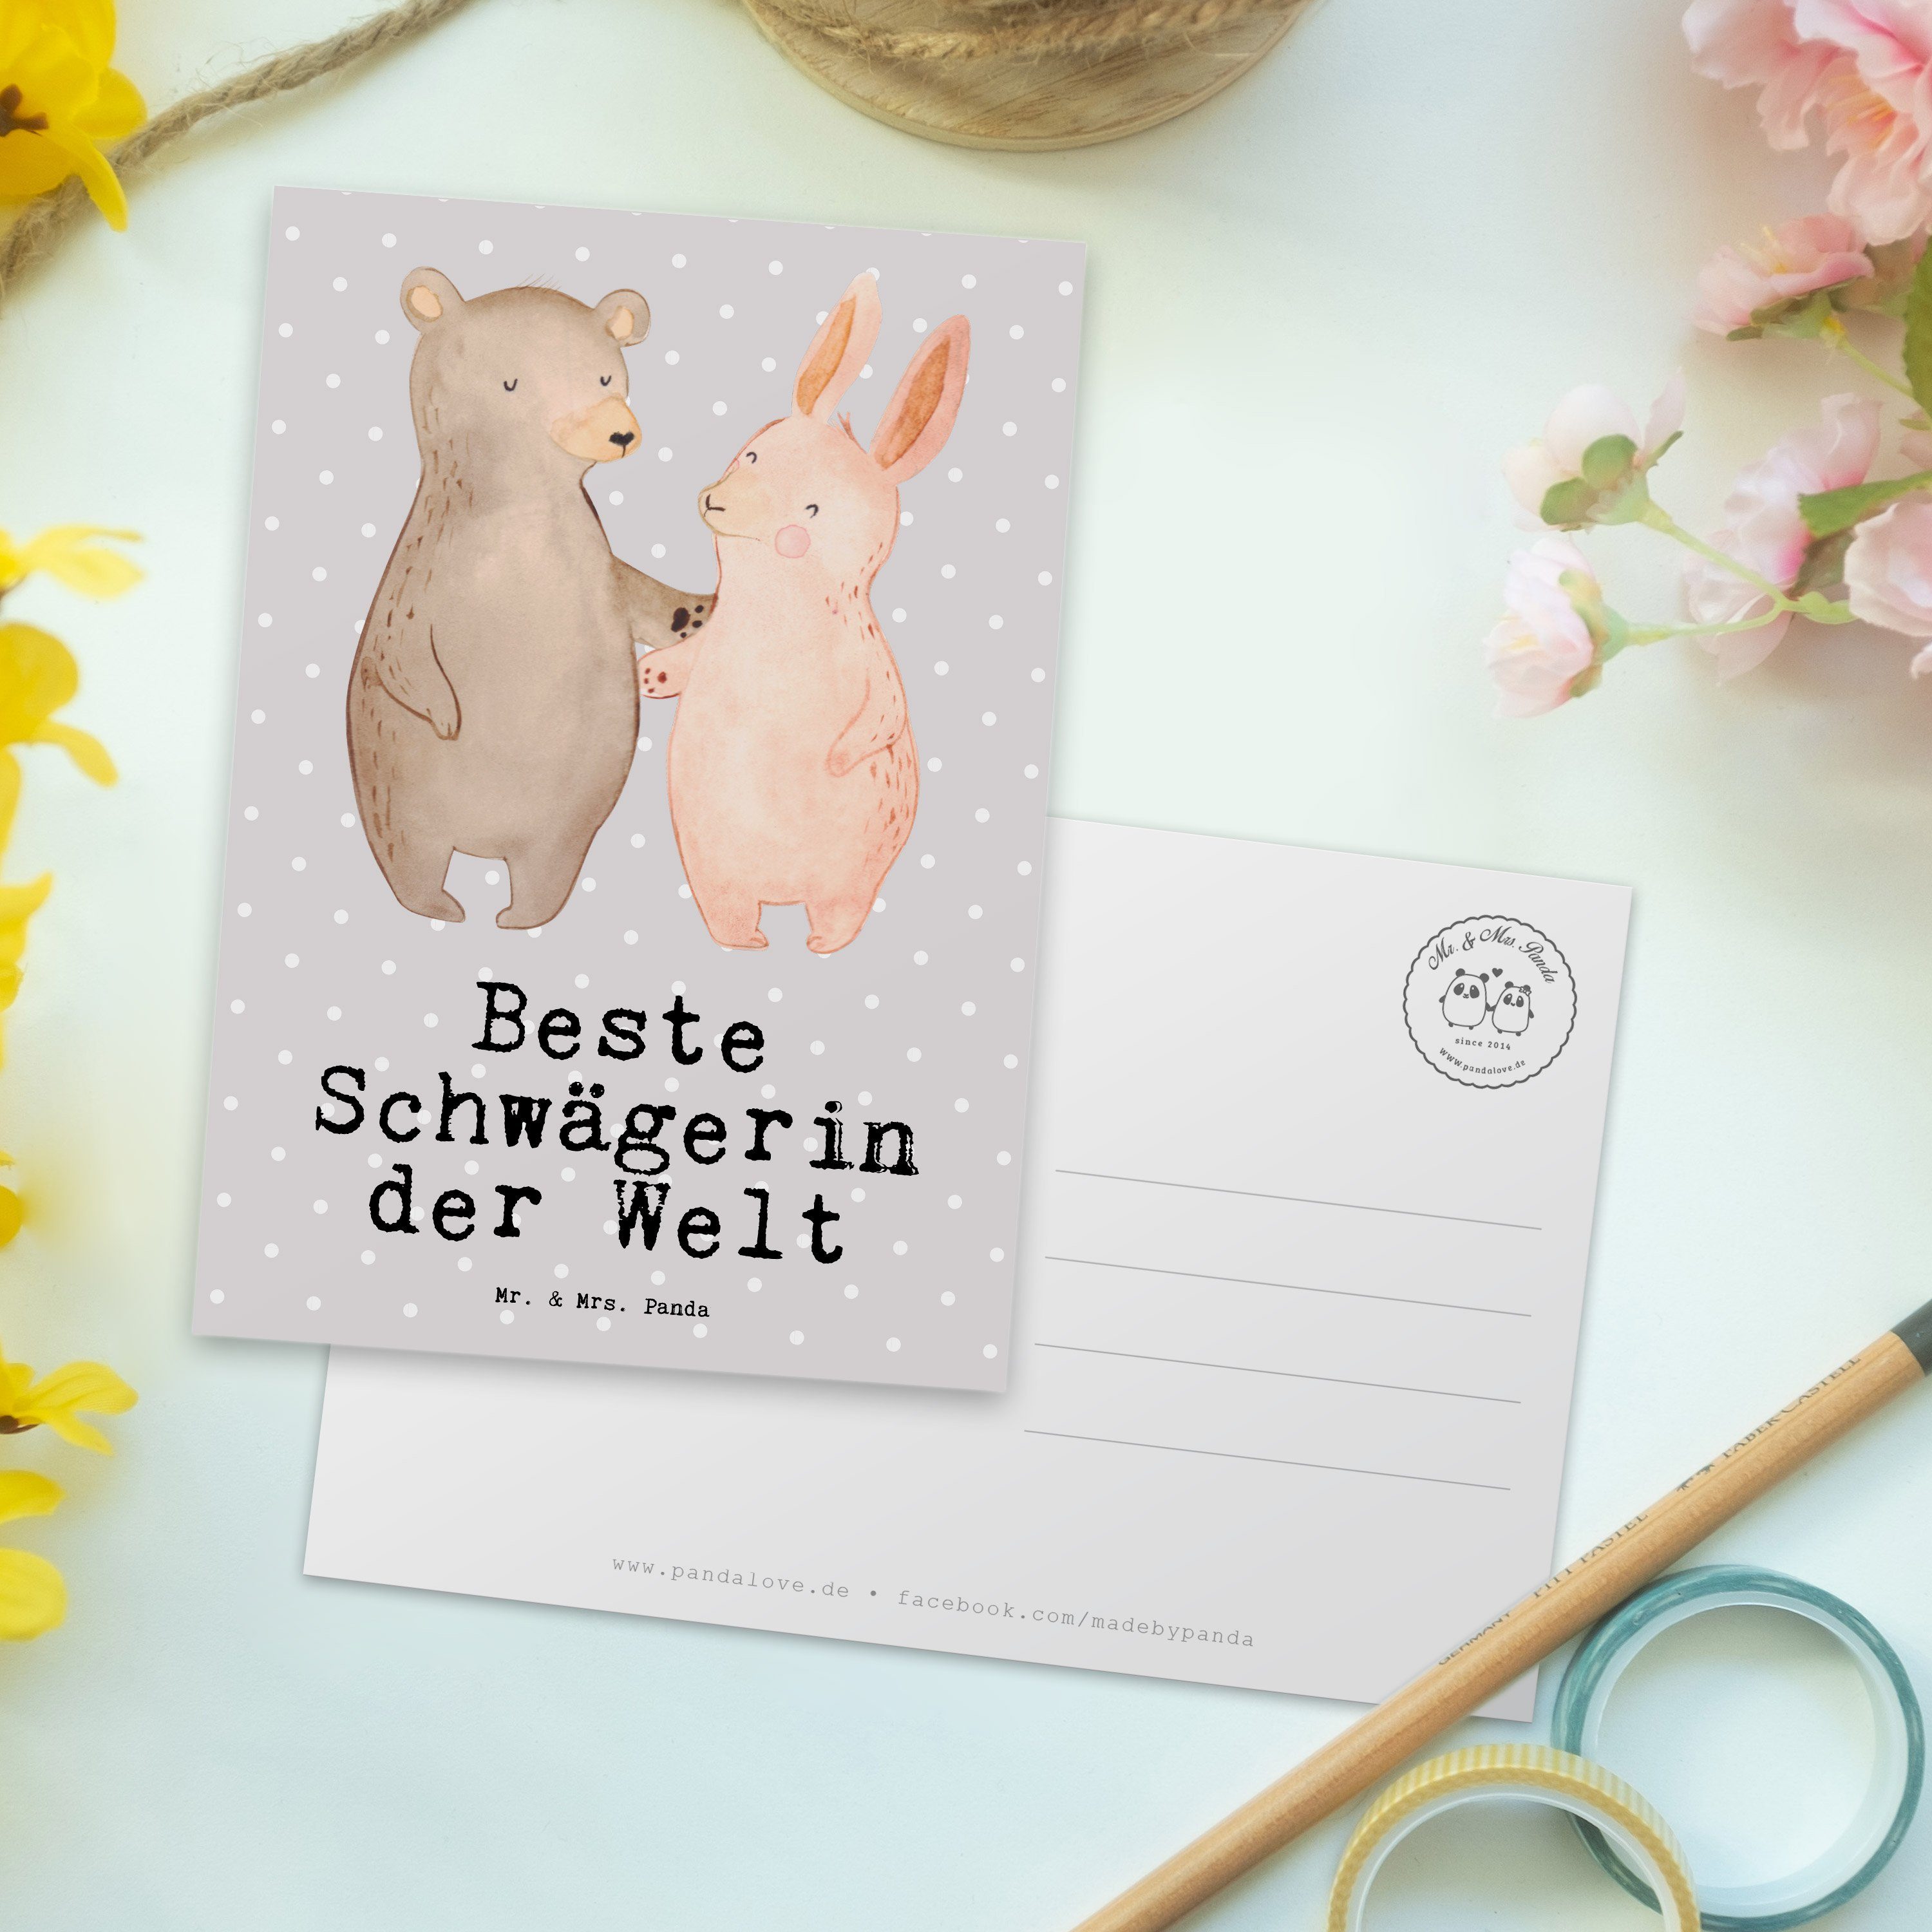 Mr. & Mrs. Panda Postkarte Hase Beste Schwägerin der Welt - Grau Pastell - Geschenk, Geschenkkar